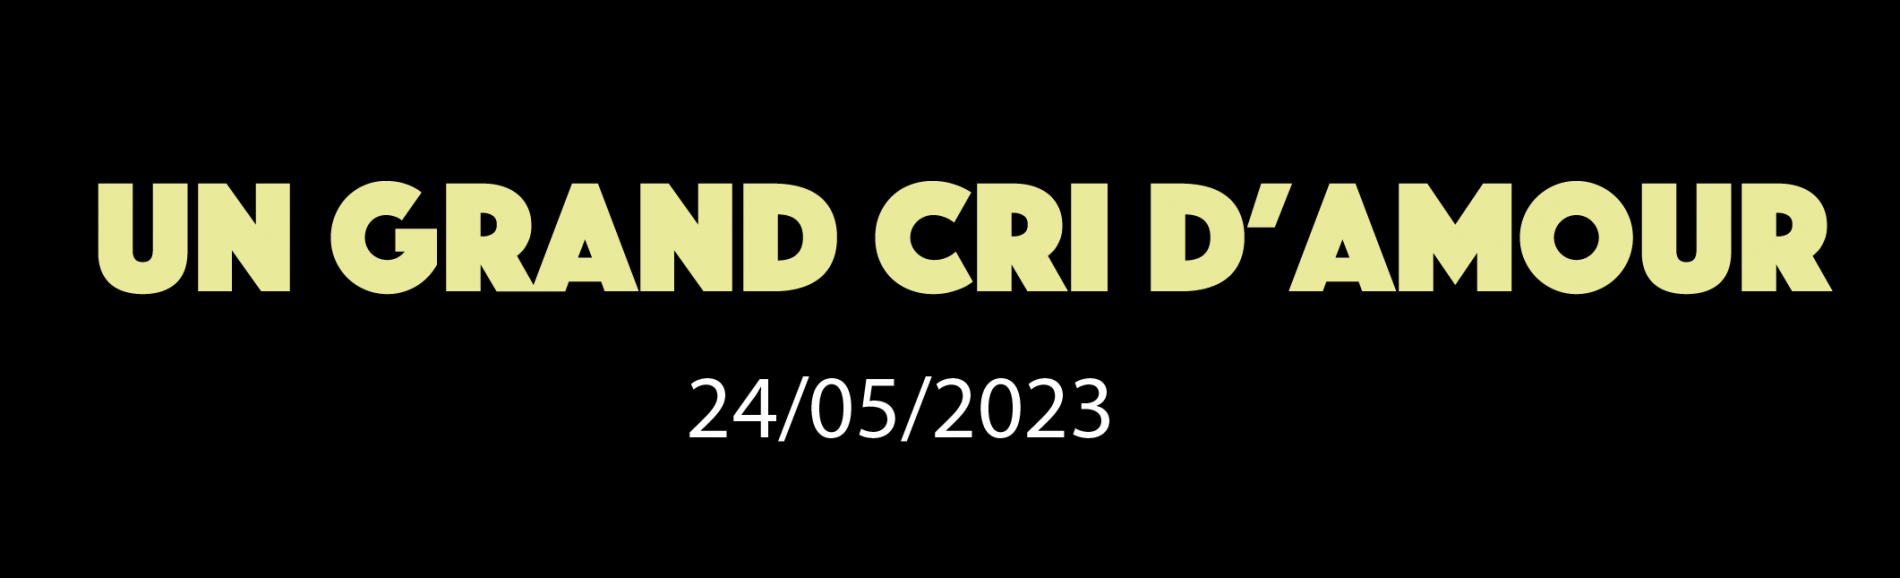 UN GRAND CRI D'AMOUR 24/5/2023